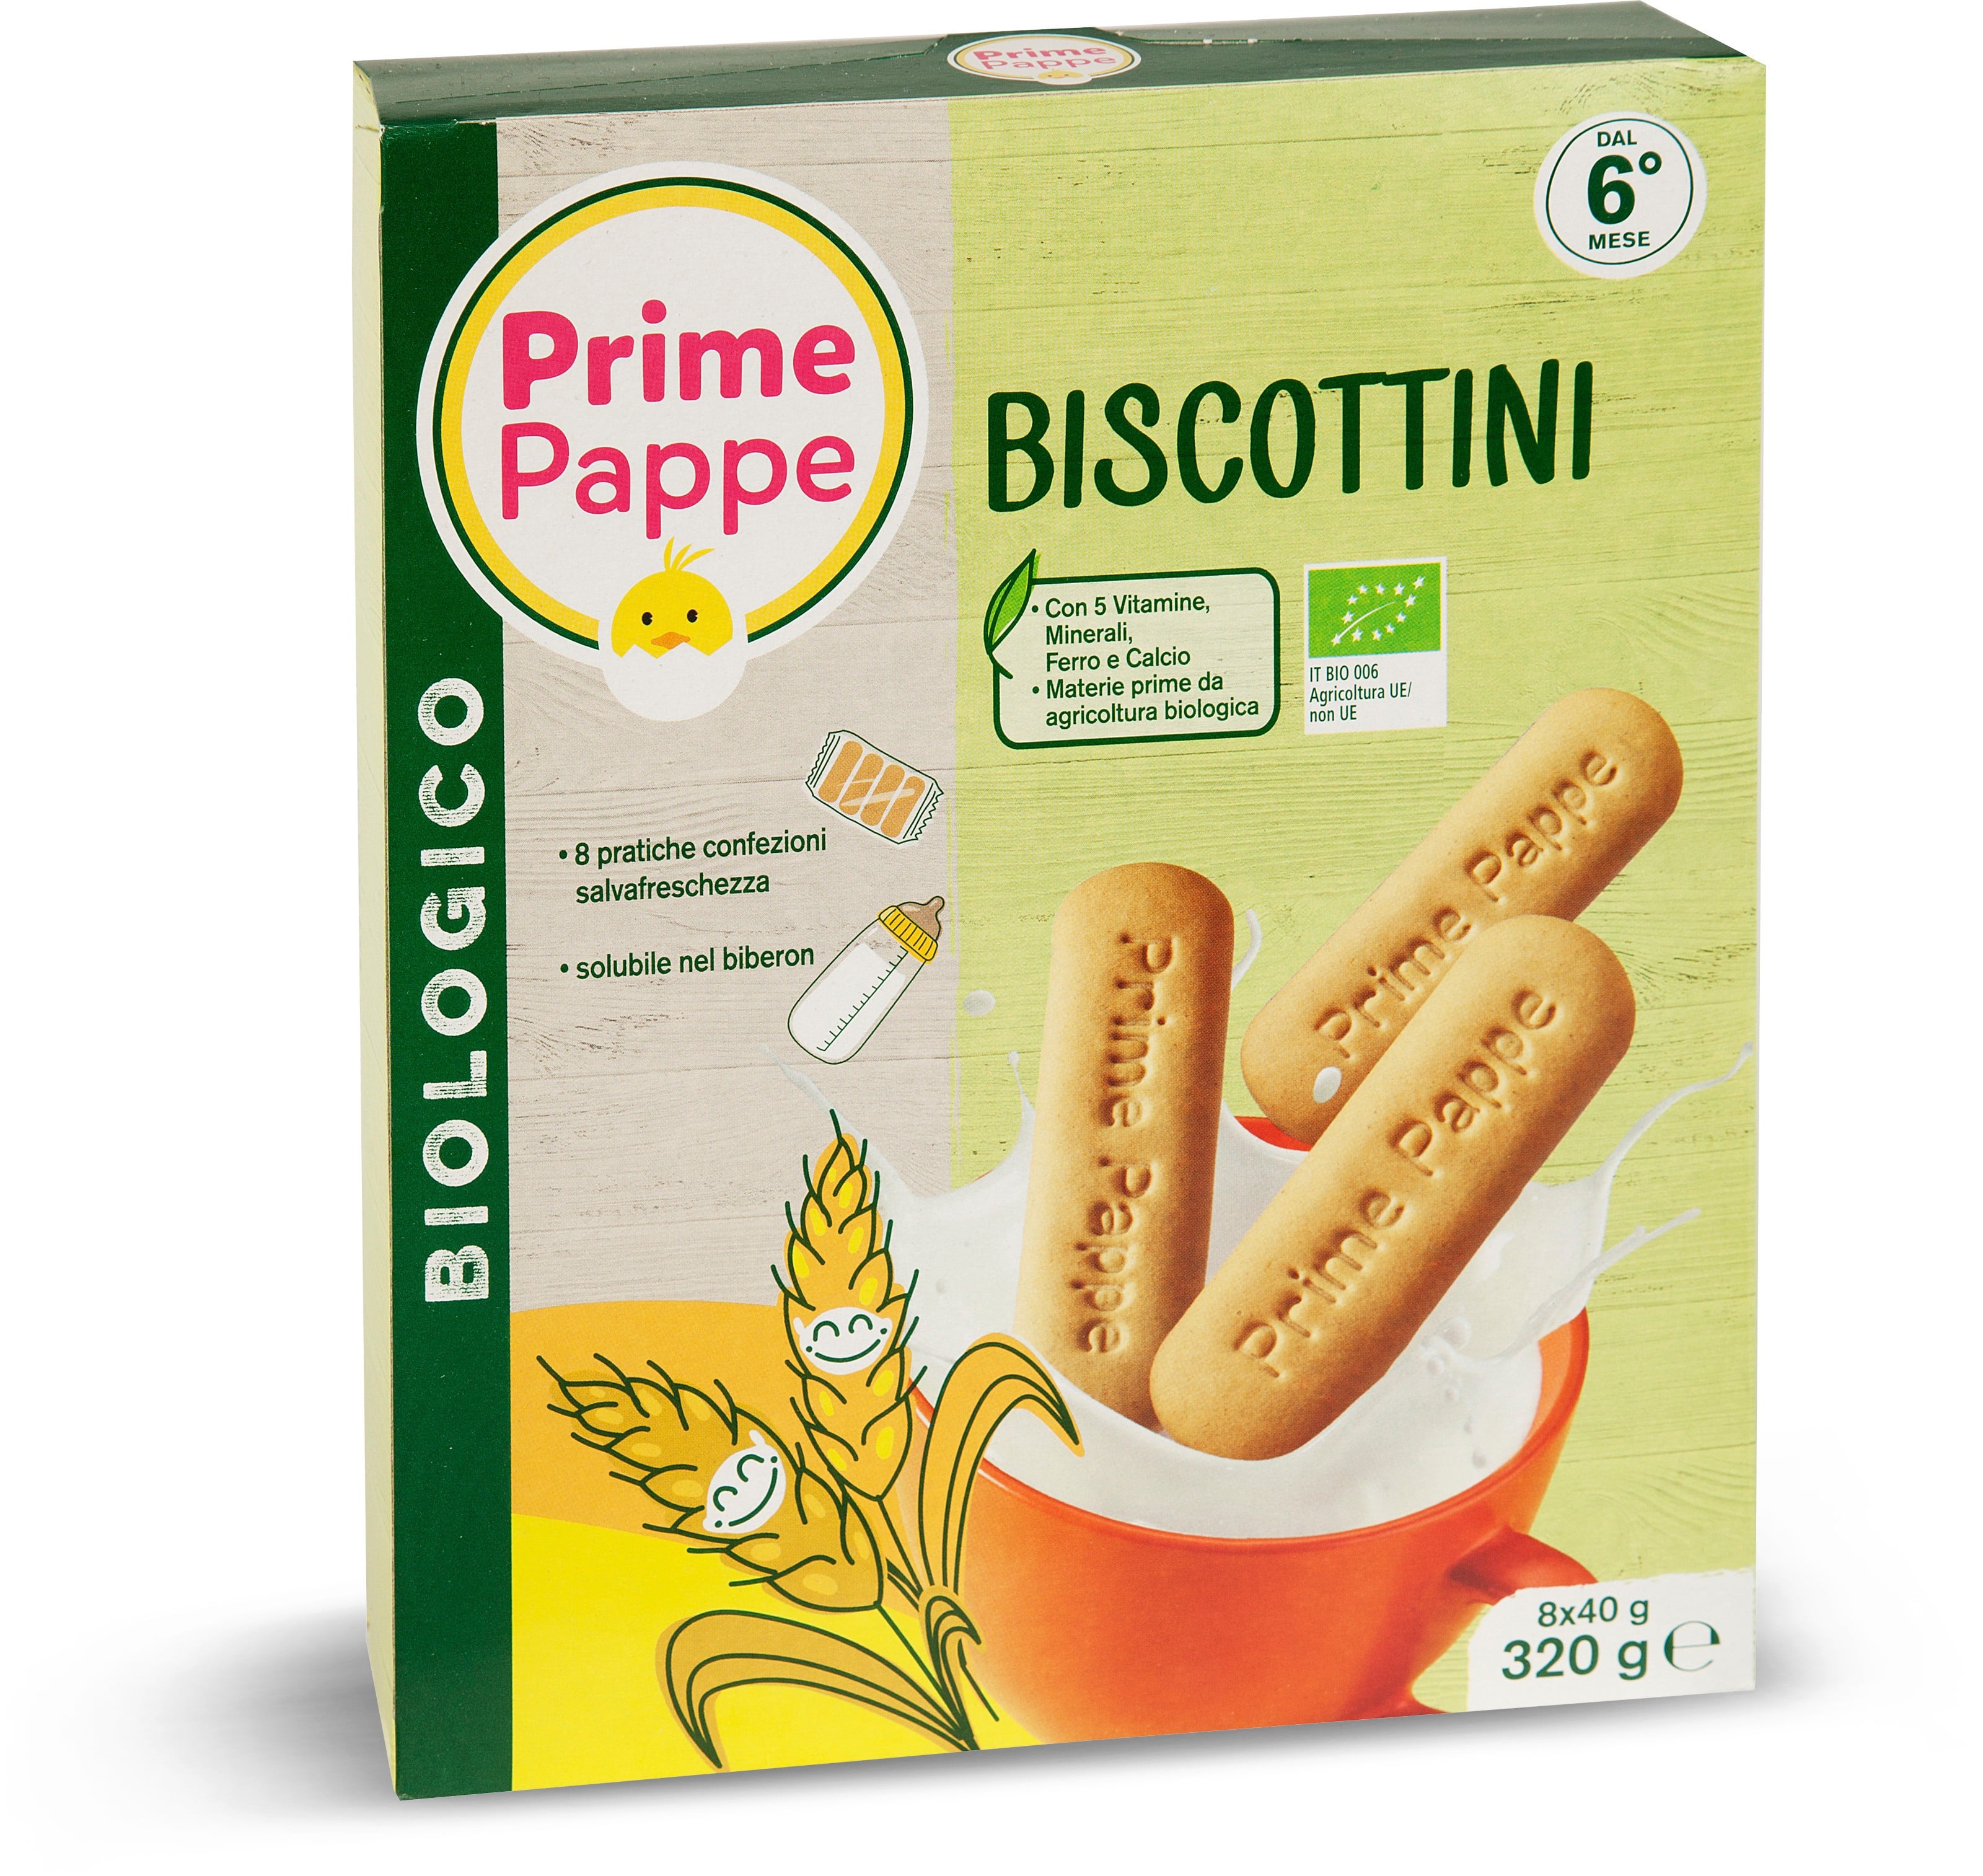 Biscottini Prime Pappe